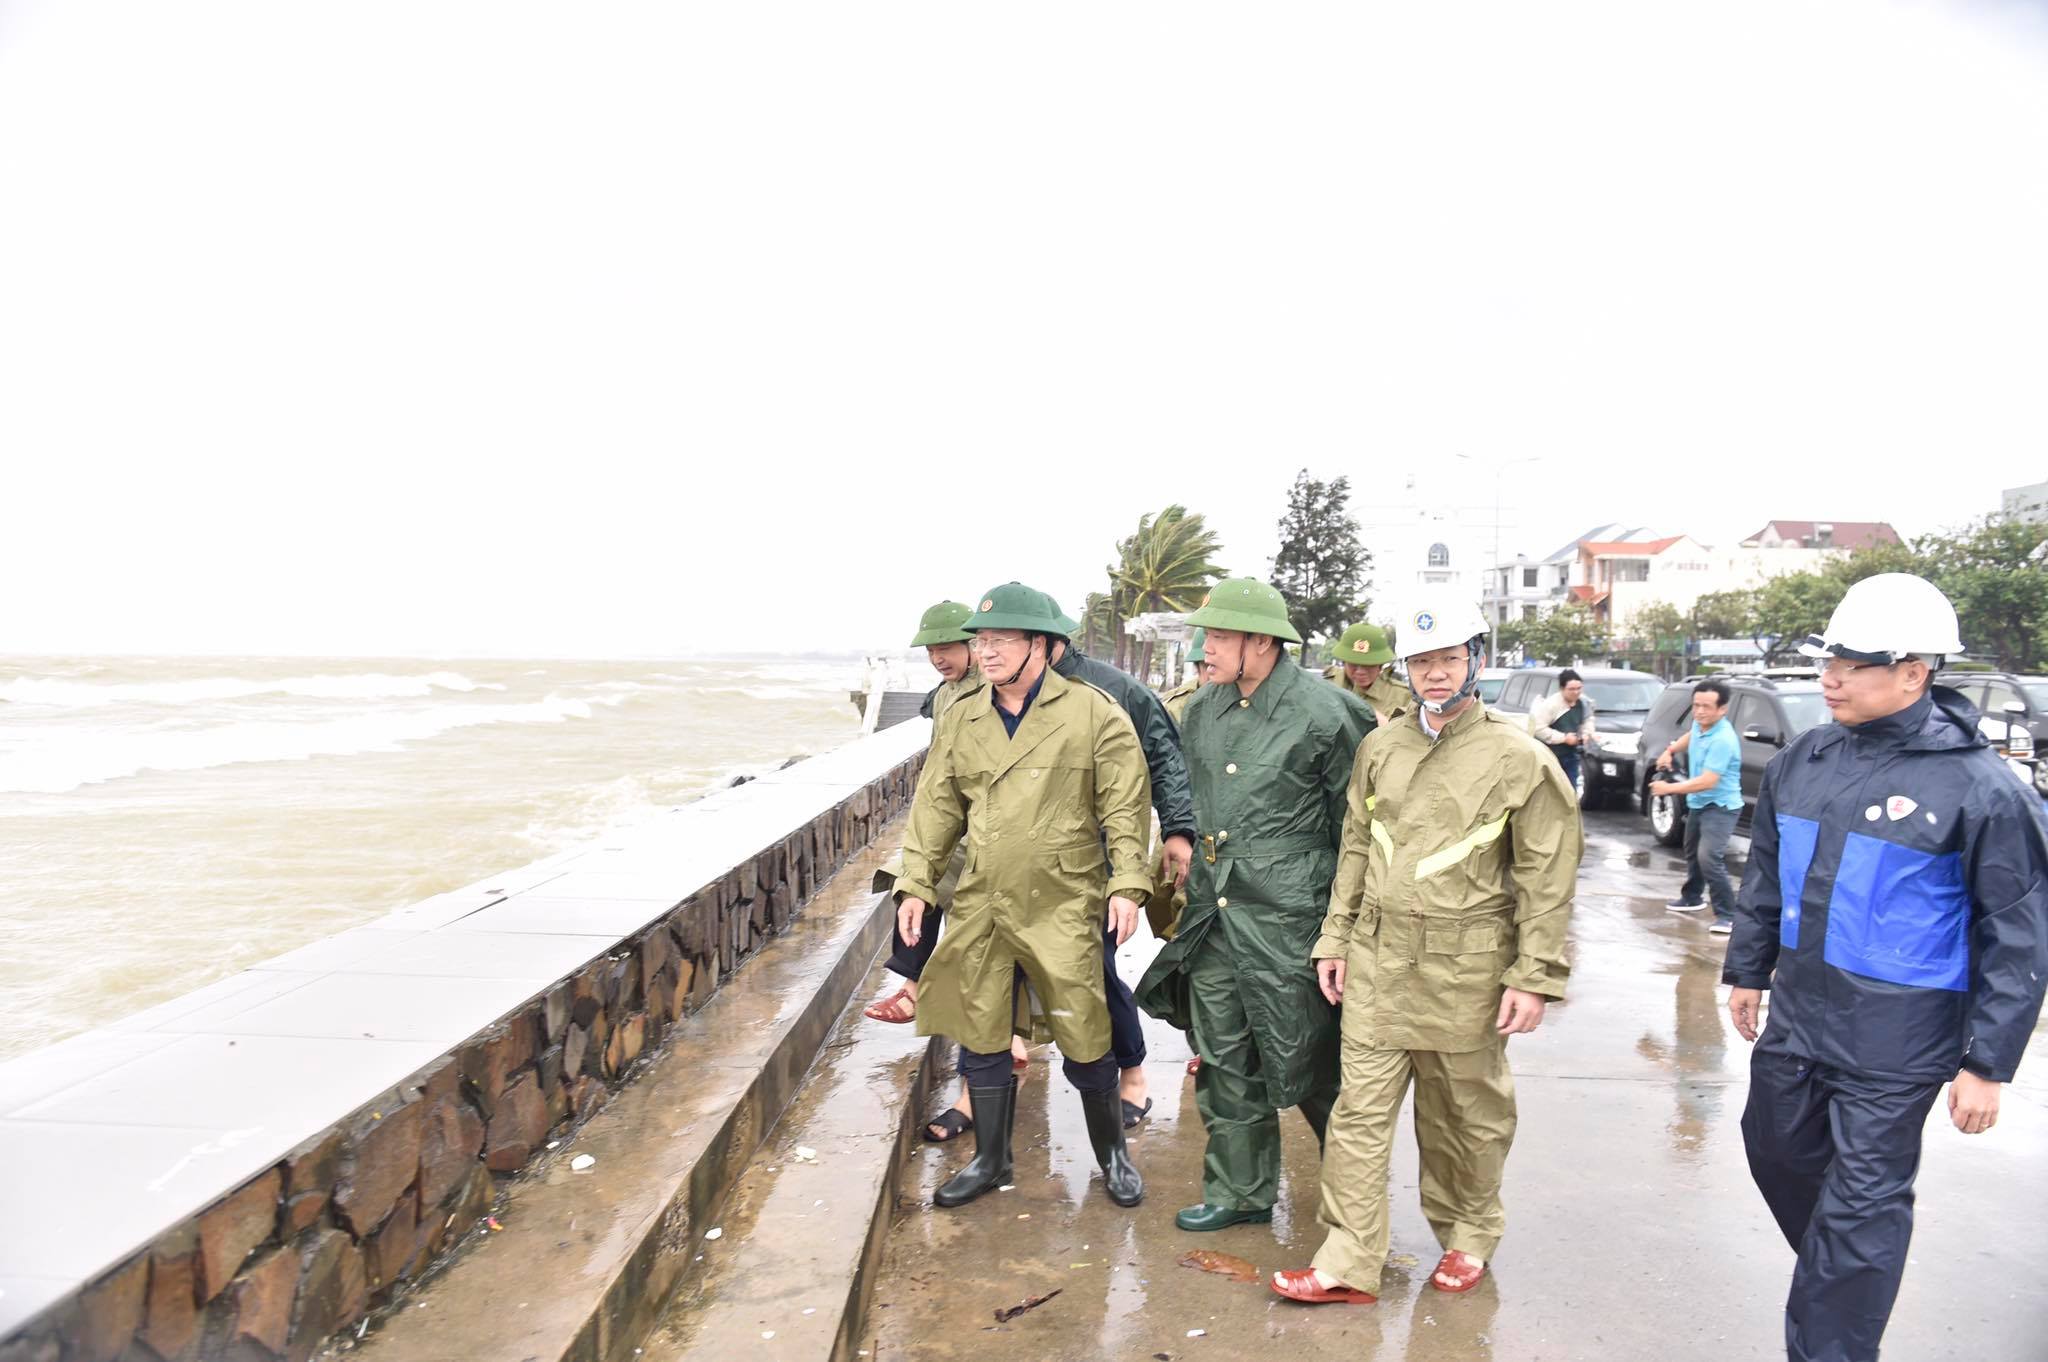 Phó Thủ tướng Trịnh Đình Dũng: Phải giữ tuyệt đối an toàn khi bão đổ bộ